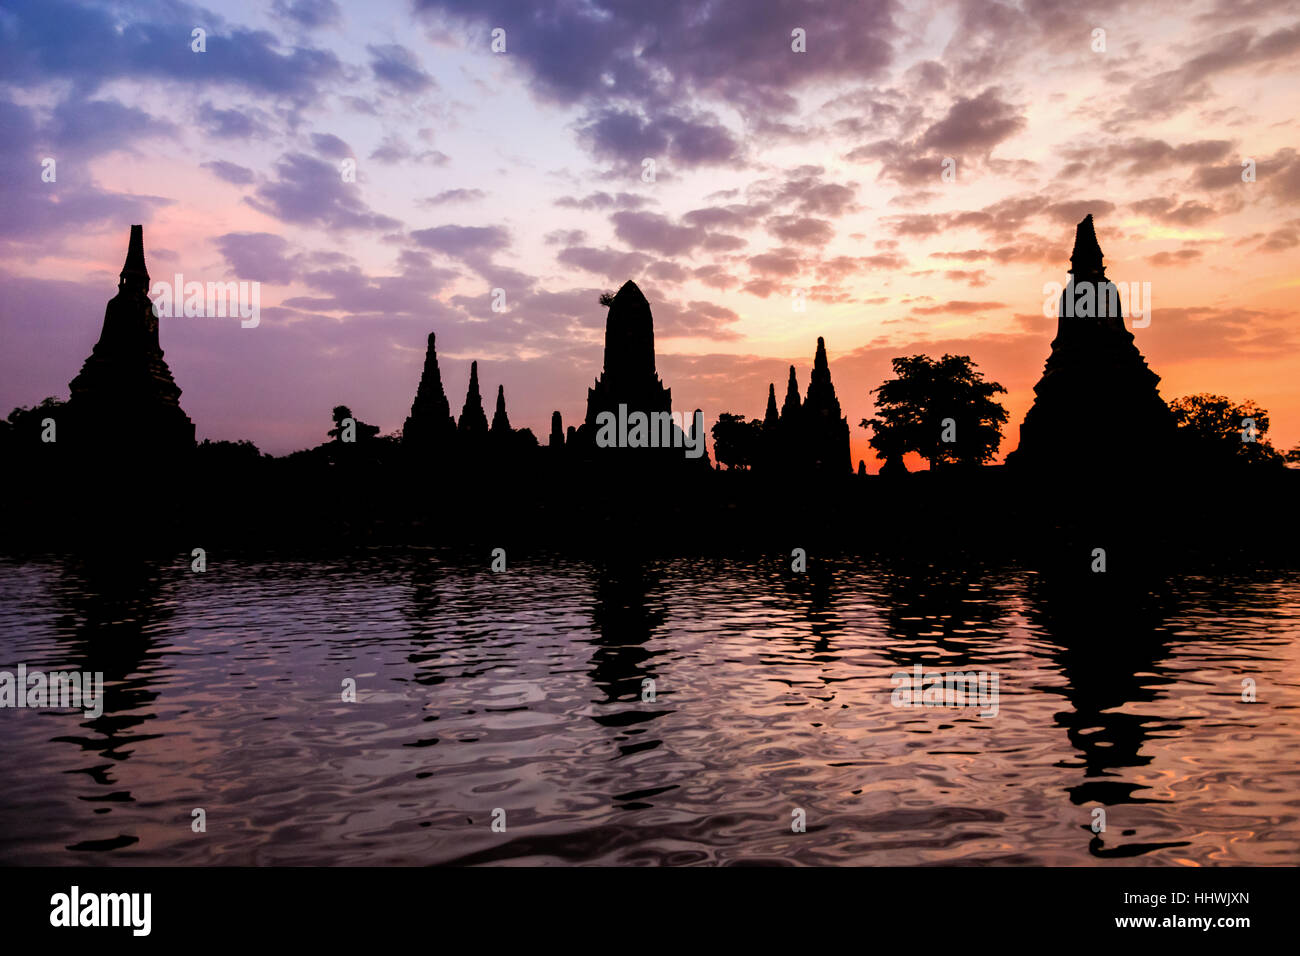 Landschaft-Silhouette des Wat Chaiwatthanaram bei Sonnenuntergang neben dem Chao-Phraya-Fluss ist religiöse Sehenswürdigkeit antiken Tempel von Ayutthaya Stockfoto